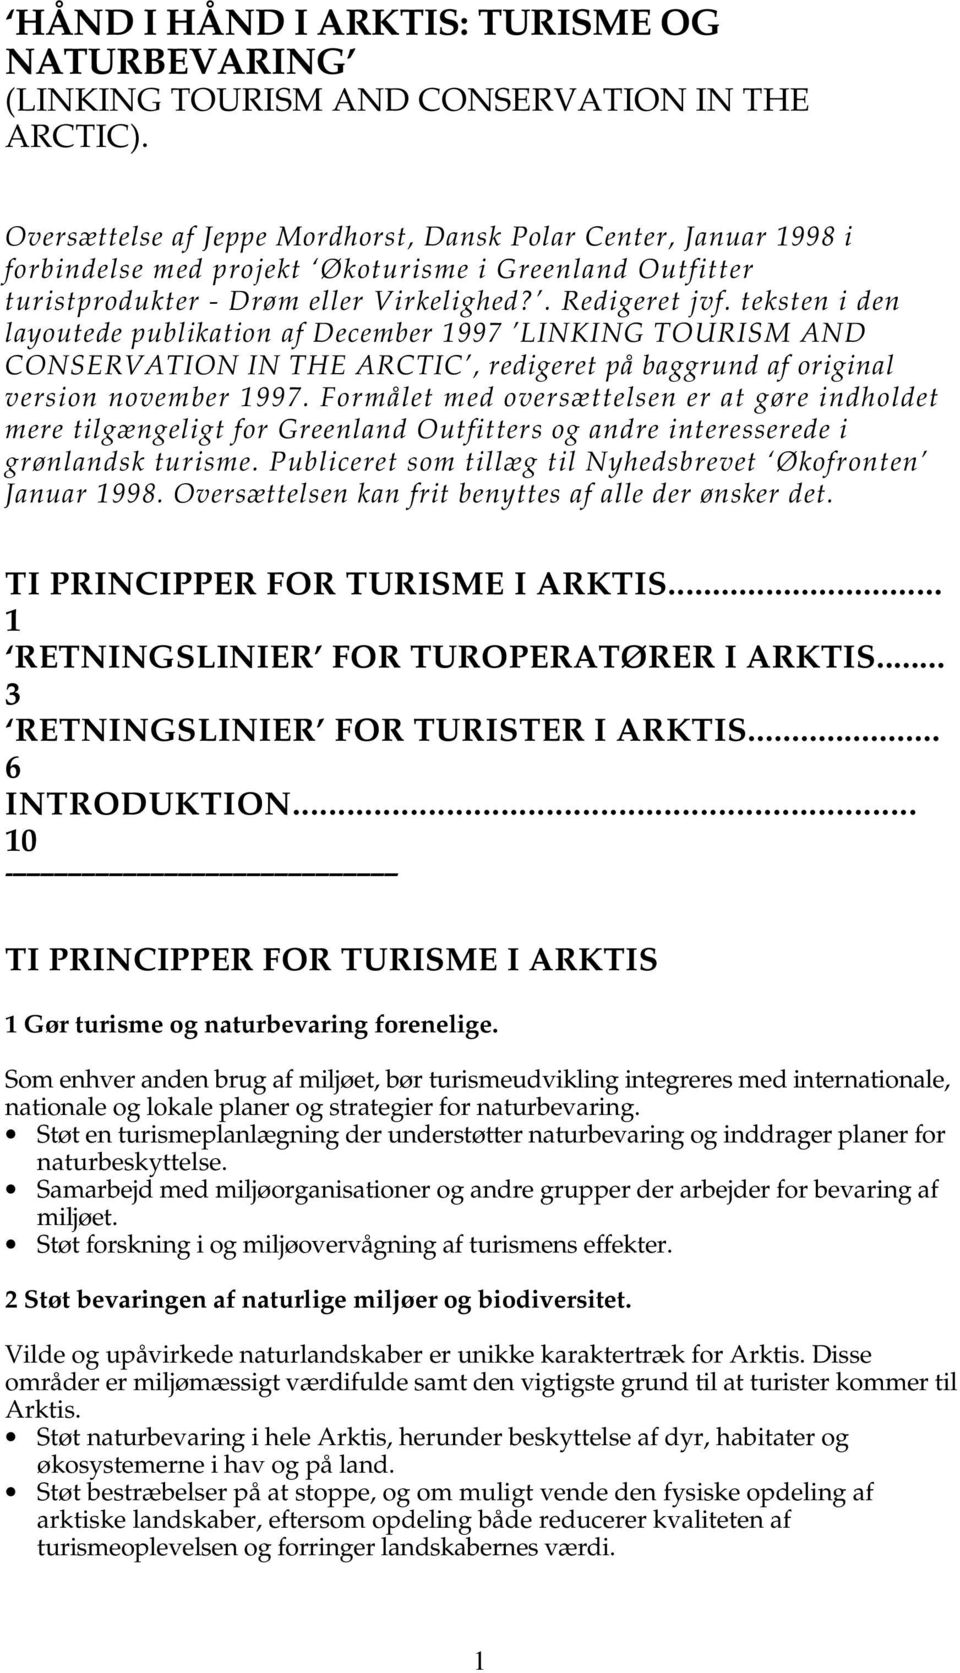 teksten i den layoutede publikation af December 1997 LINKING TOURISM AND CONSERVATION IN THE ARCTIC, redigeret på baggrund af original version november 1997.